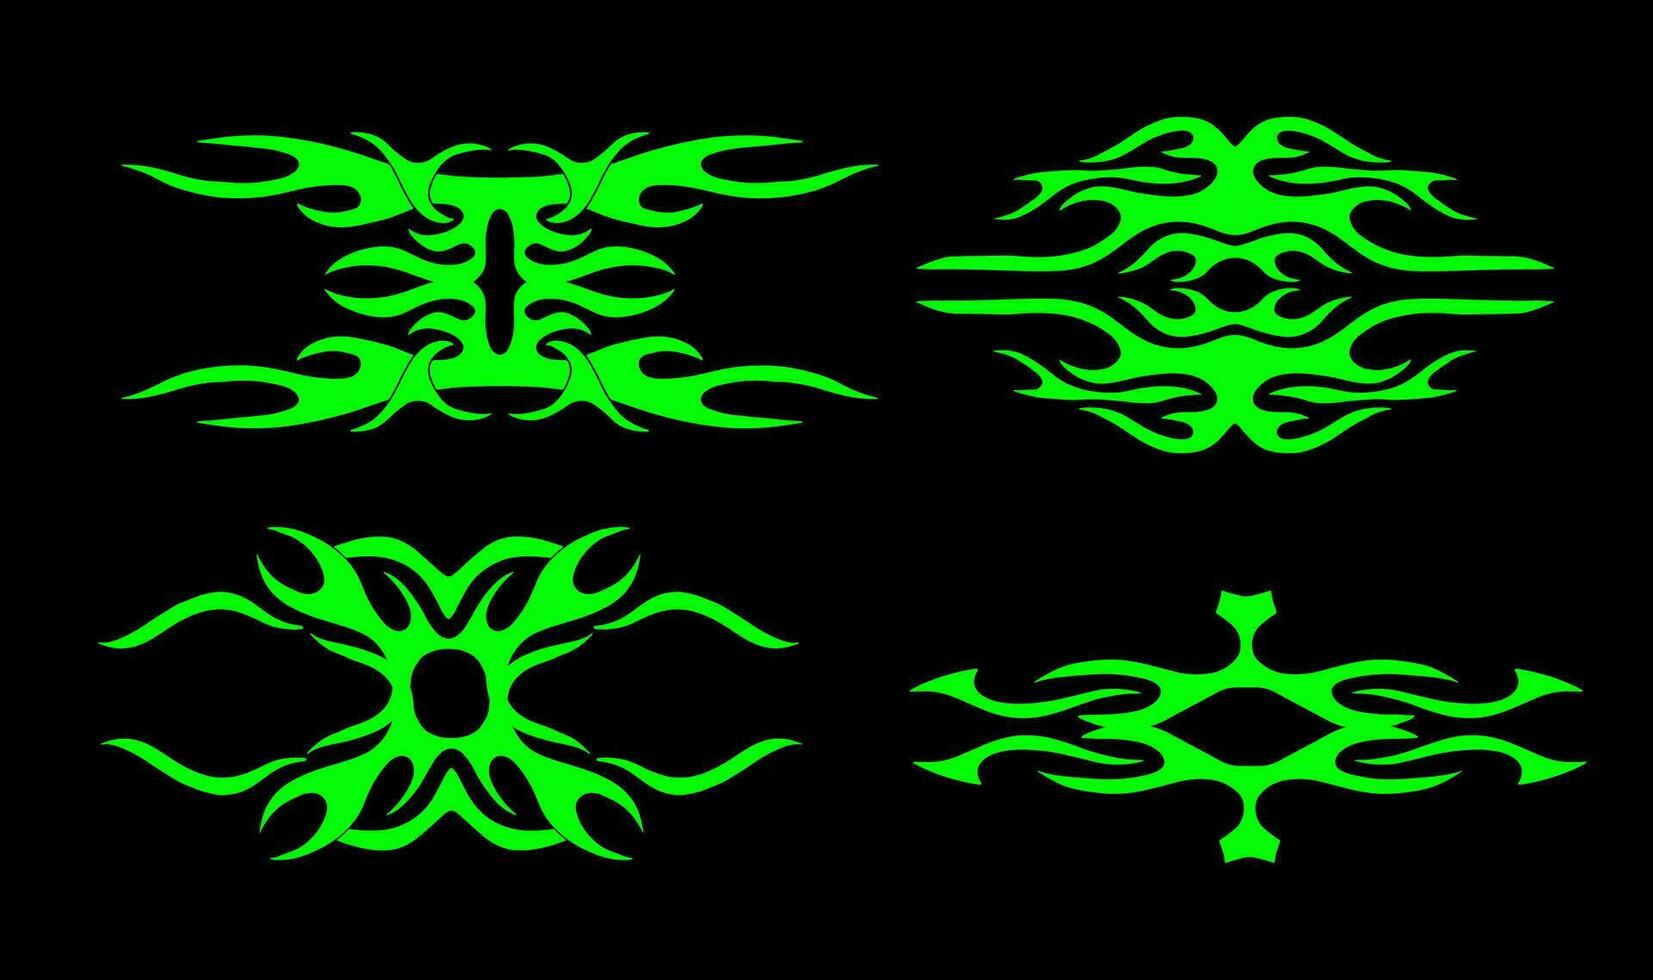 neo tribale o informatica sigilismo forma impostato per tatuaggio, abbigliamento di strada eccetera mano disegnato simmetrico vettore illustrazione.